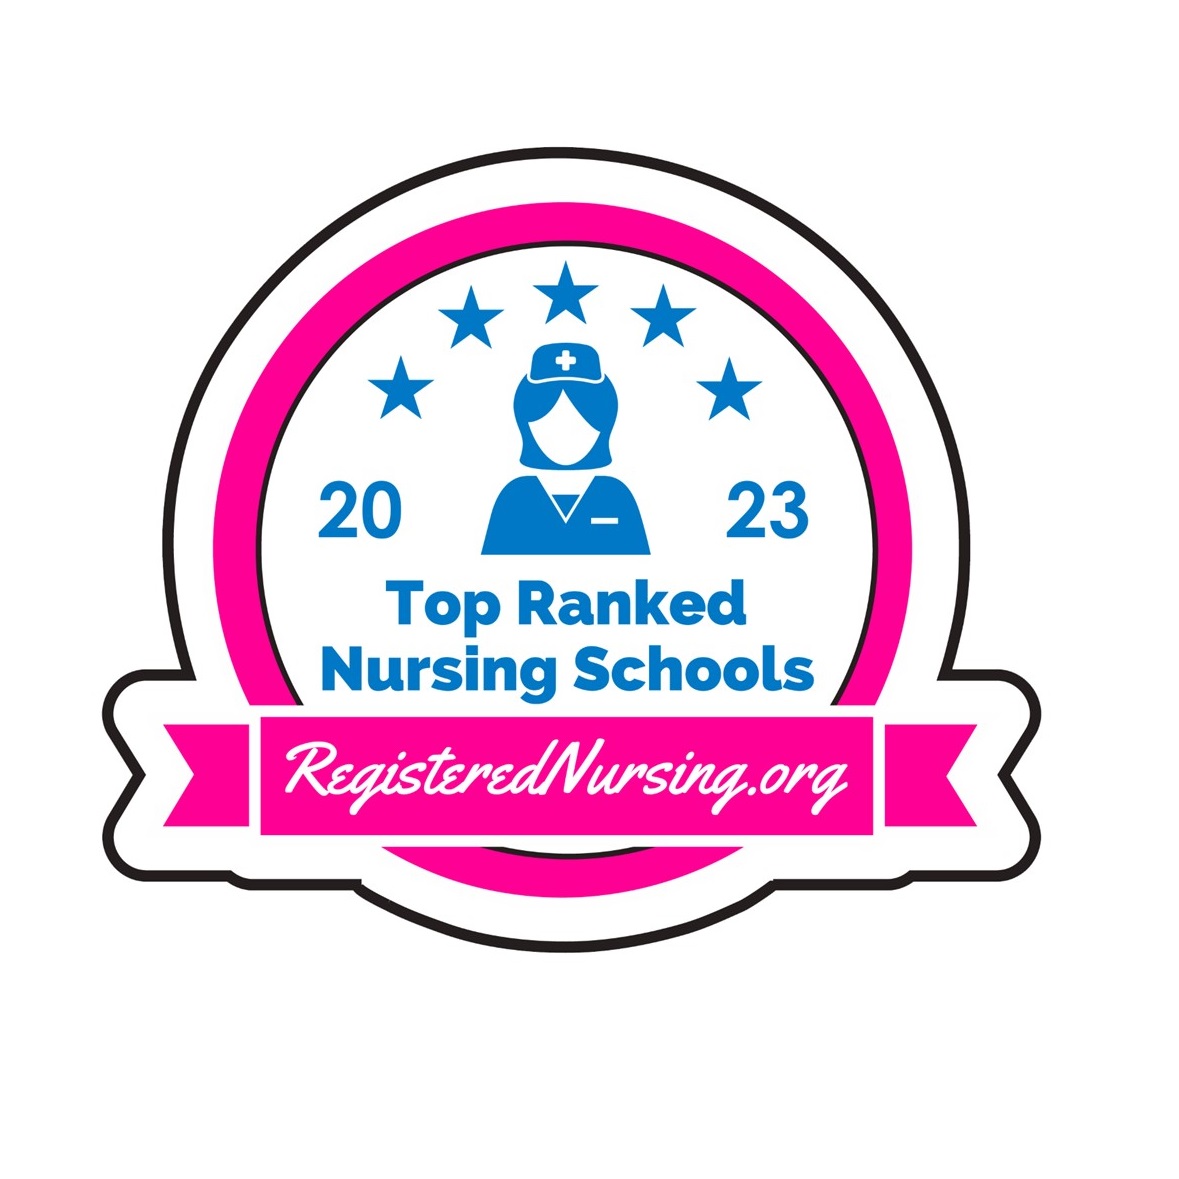 RegisteredNursing.org rank logo